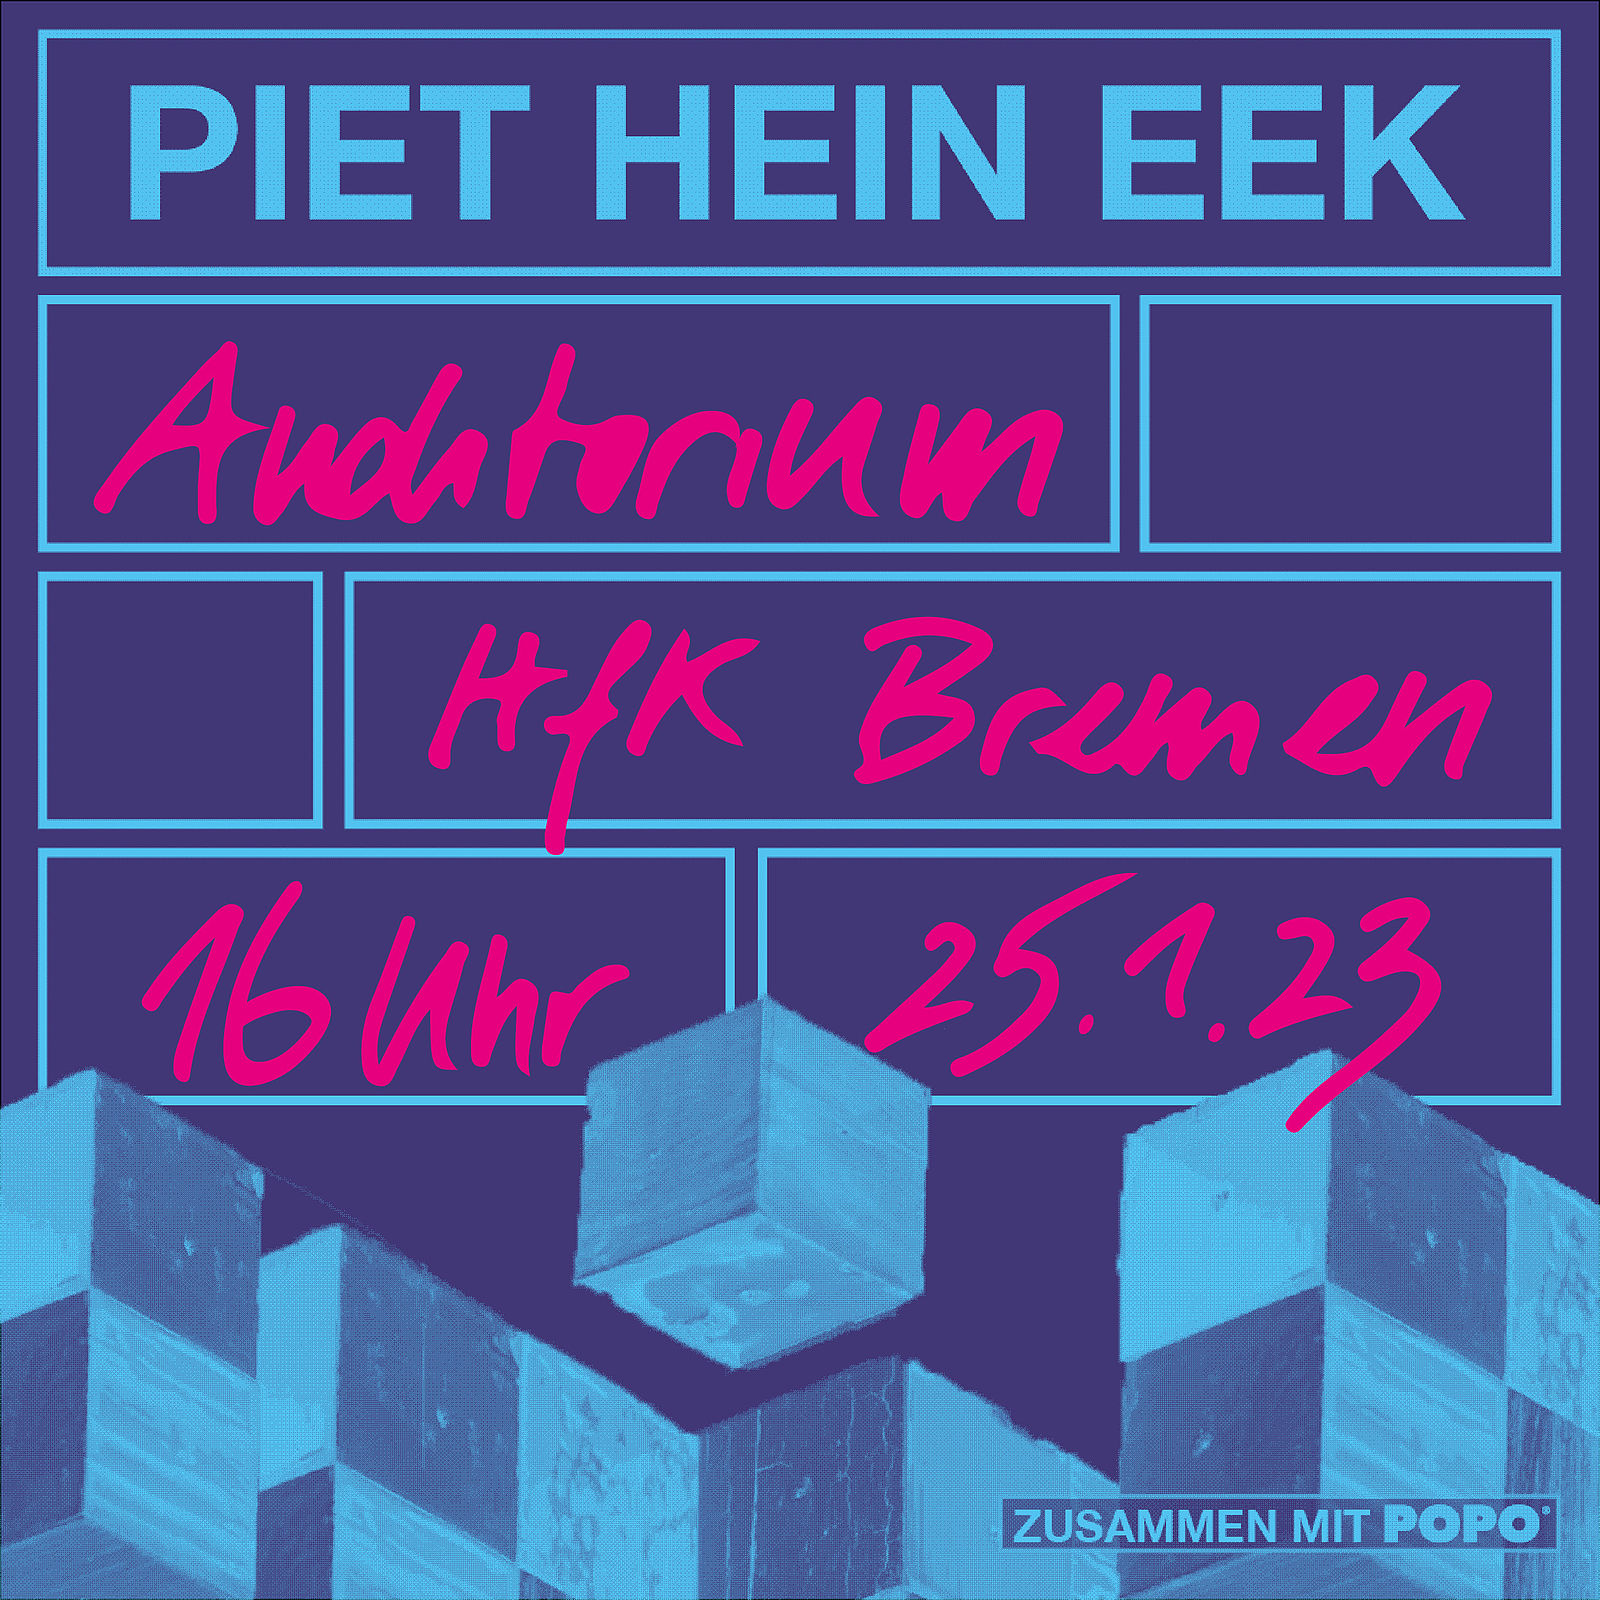 Vortrag mit Piet Hein Eek